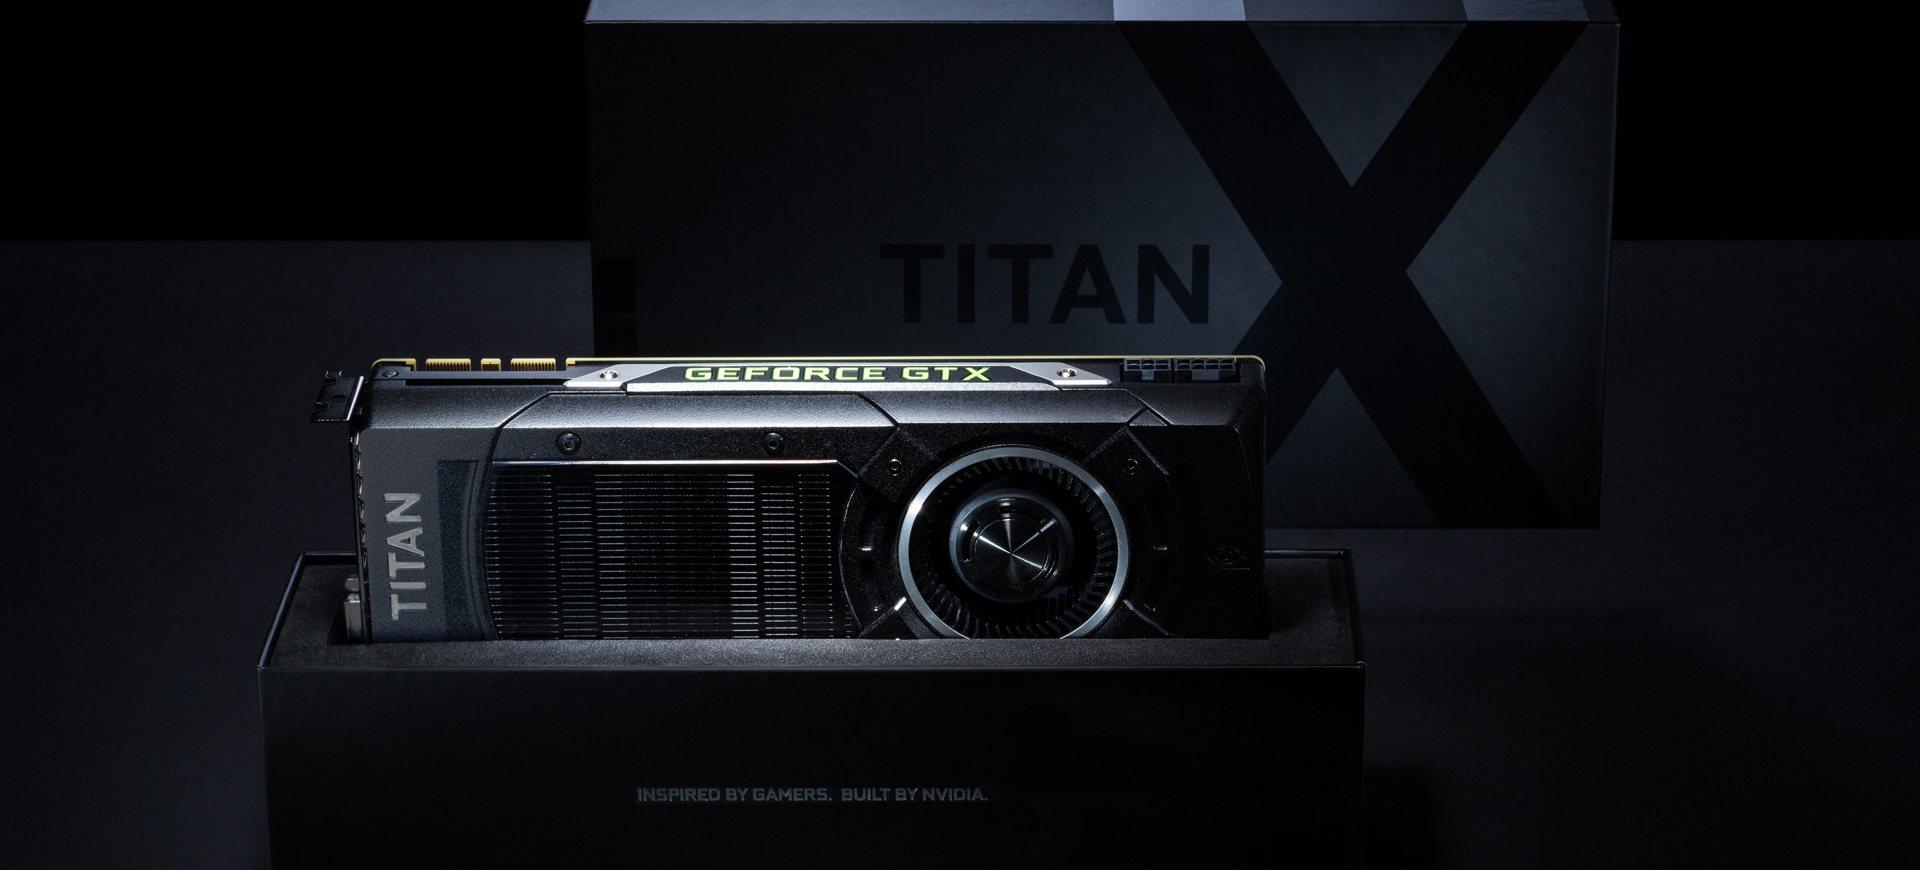 NVIDIA có thể ra mắt GeForce GTX Titan dựa trên kiến trúc Pascal trong tháng 8